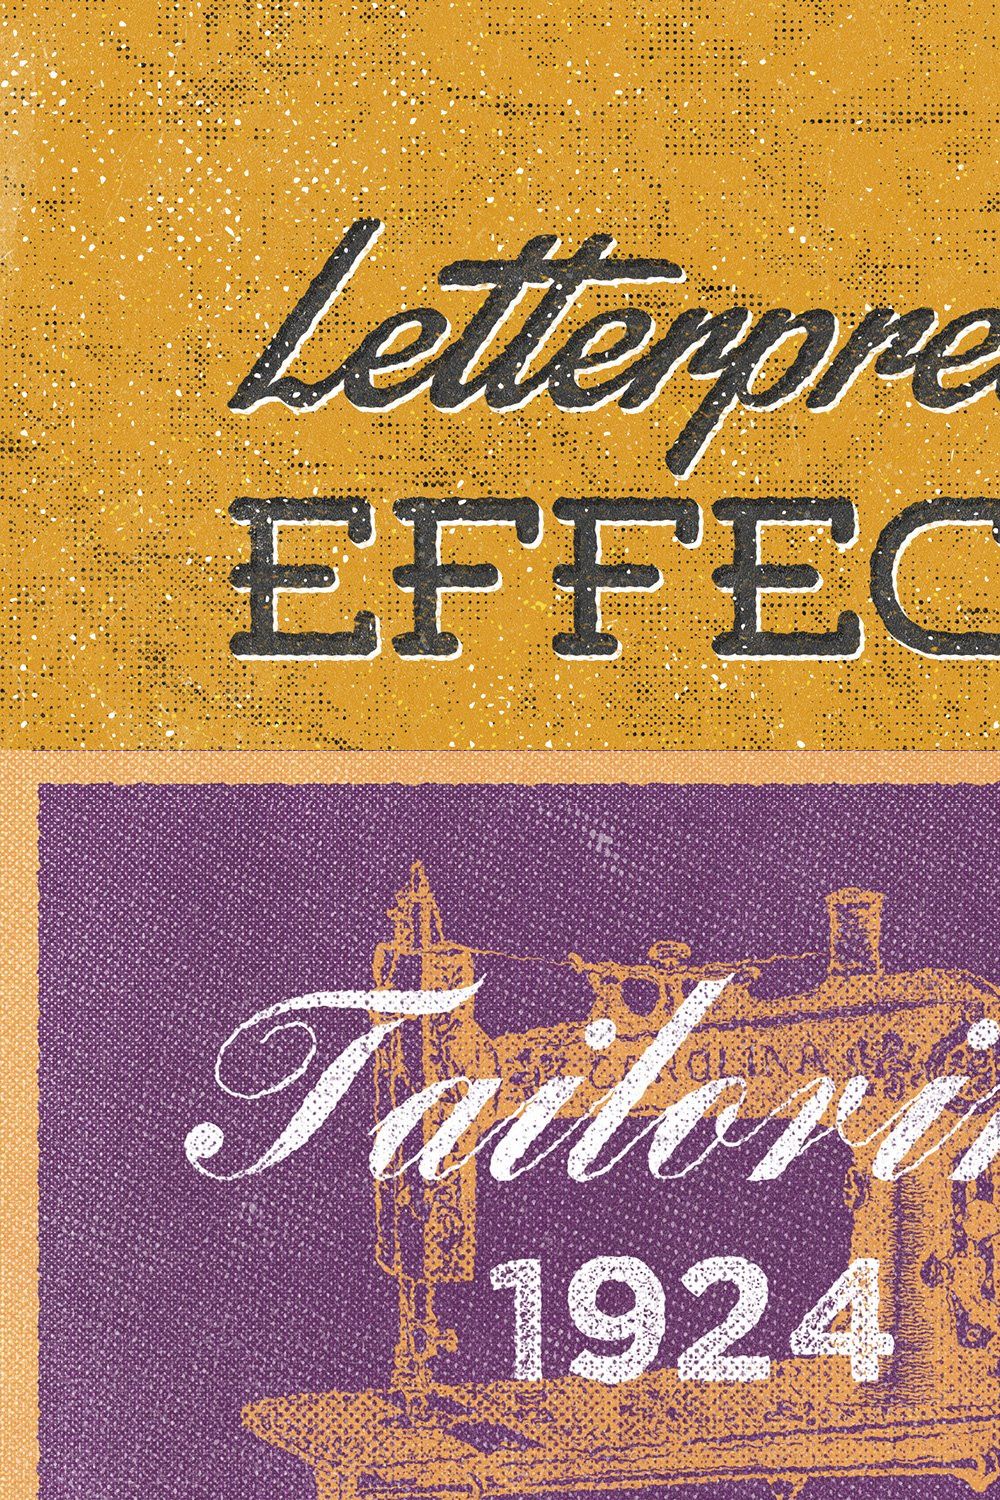 Vintage Letterpress Mockups pinterest preview image.